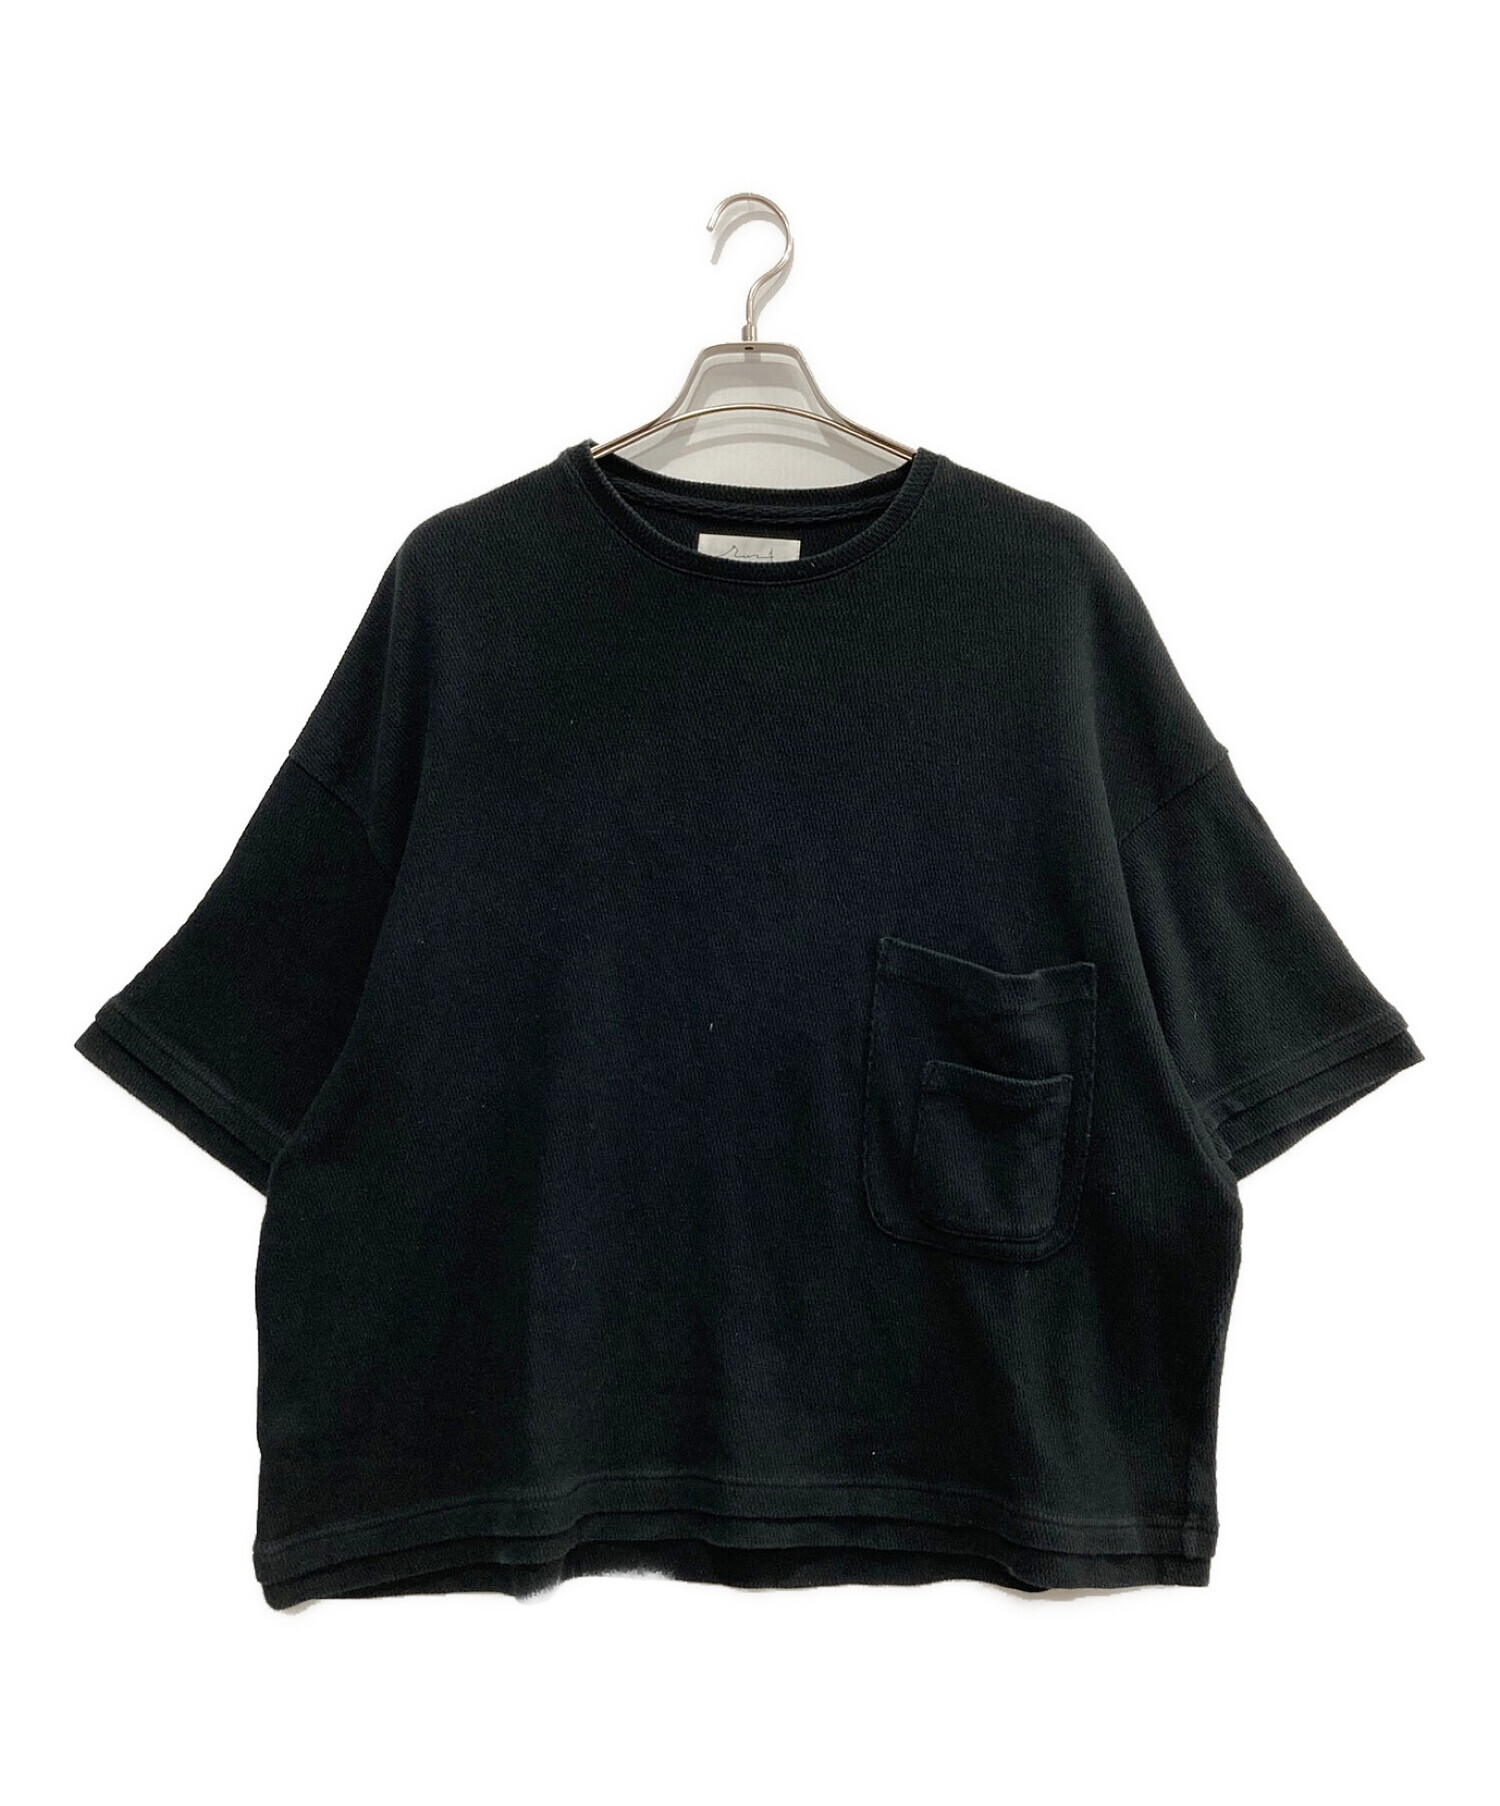 RIN TTAGGG (リン タッグ) ビッグシルエットポケットTシャツ ブラック サイズ:Sトップス